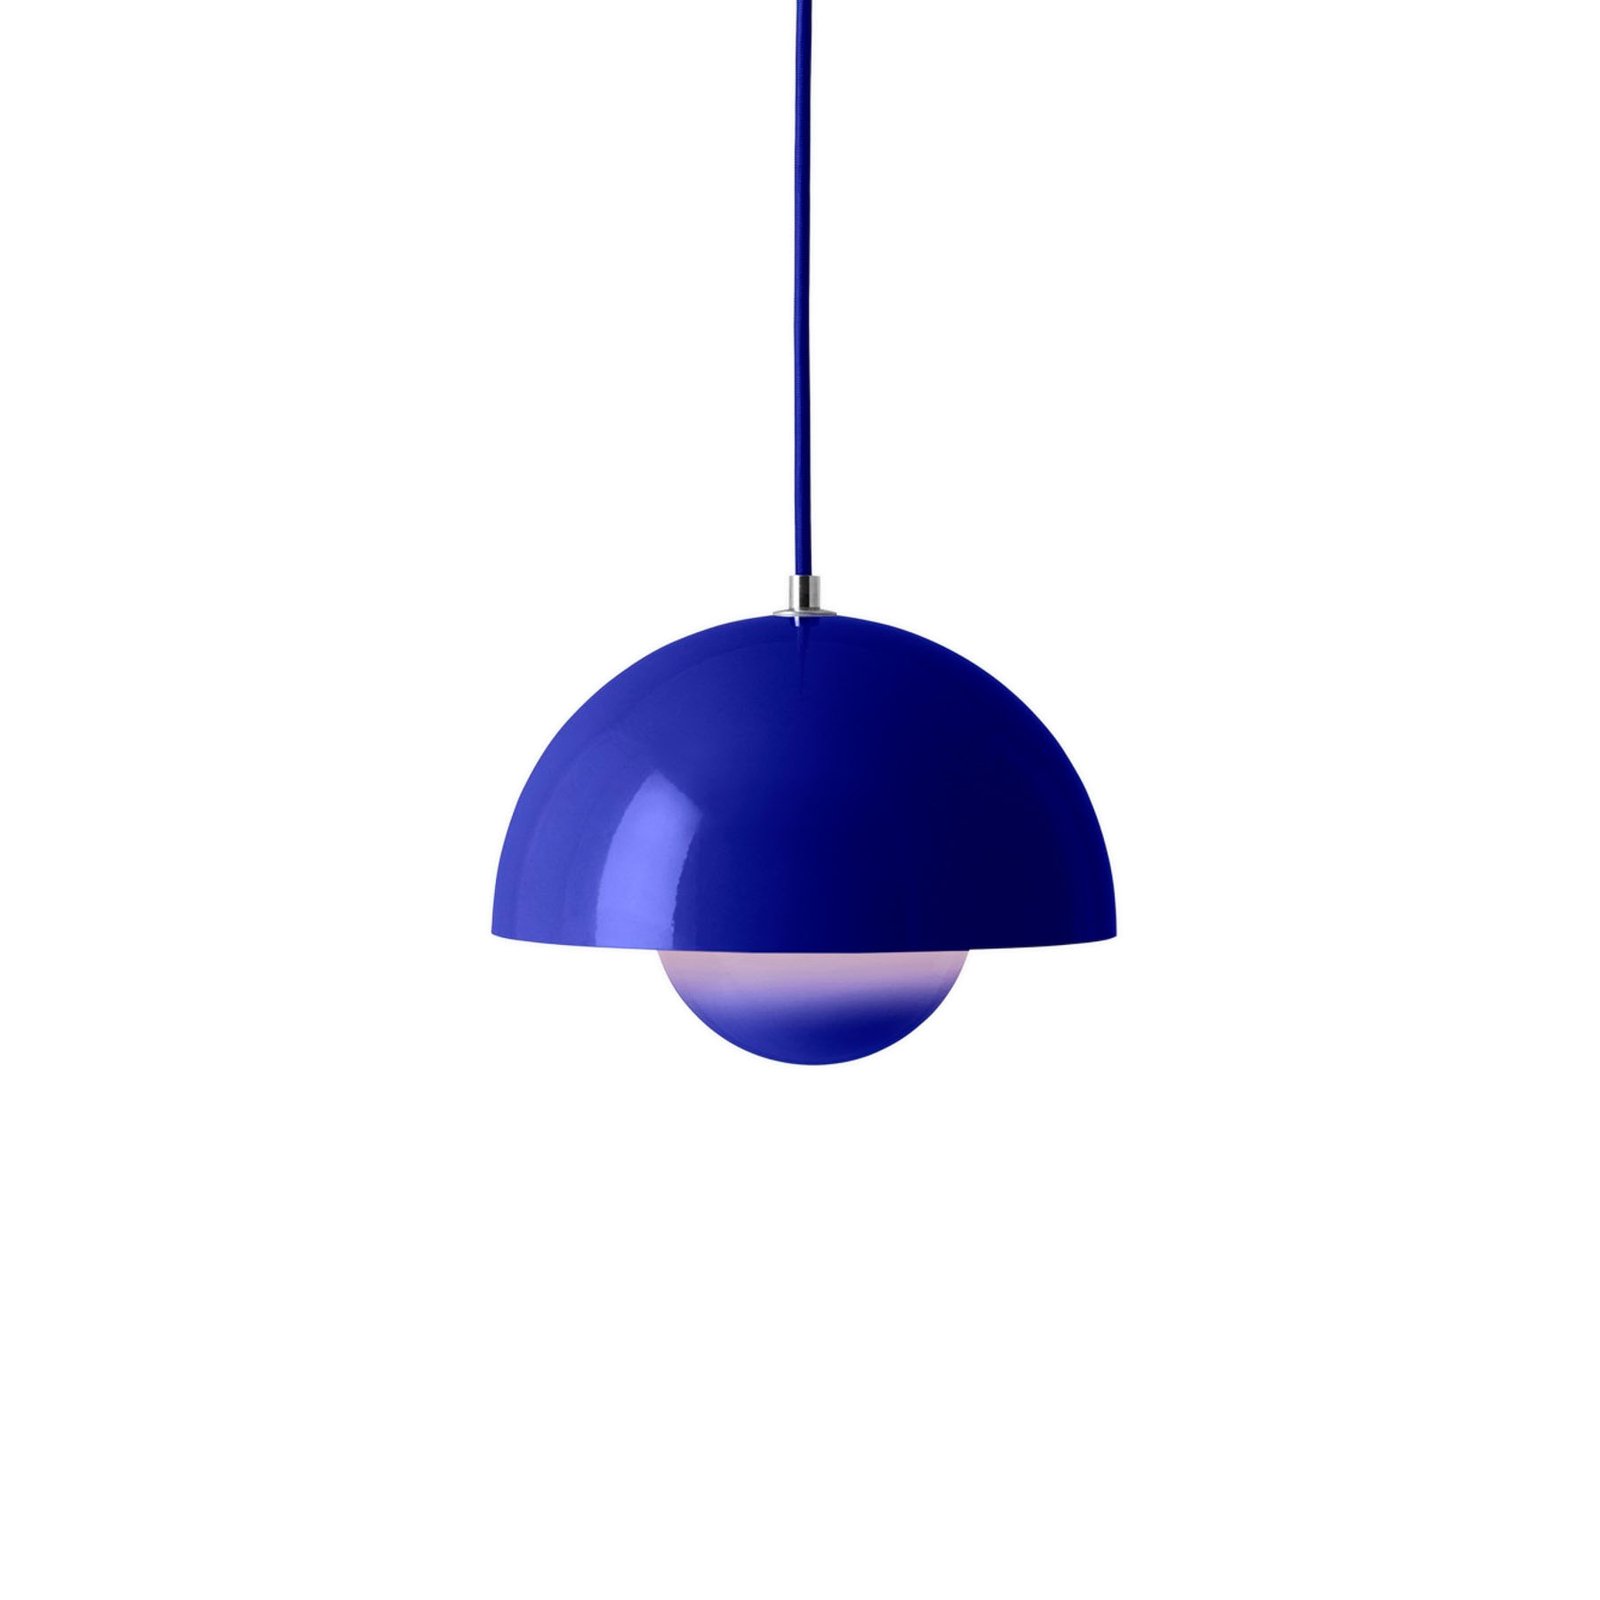 &Tradycyjna lampa wisząca Flowerpot VP1, Ø 23 cm, kobaltowy niebieski